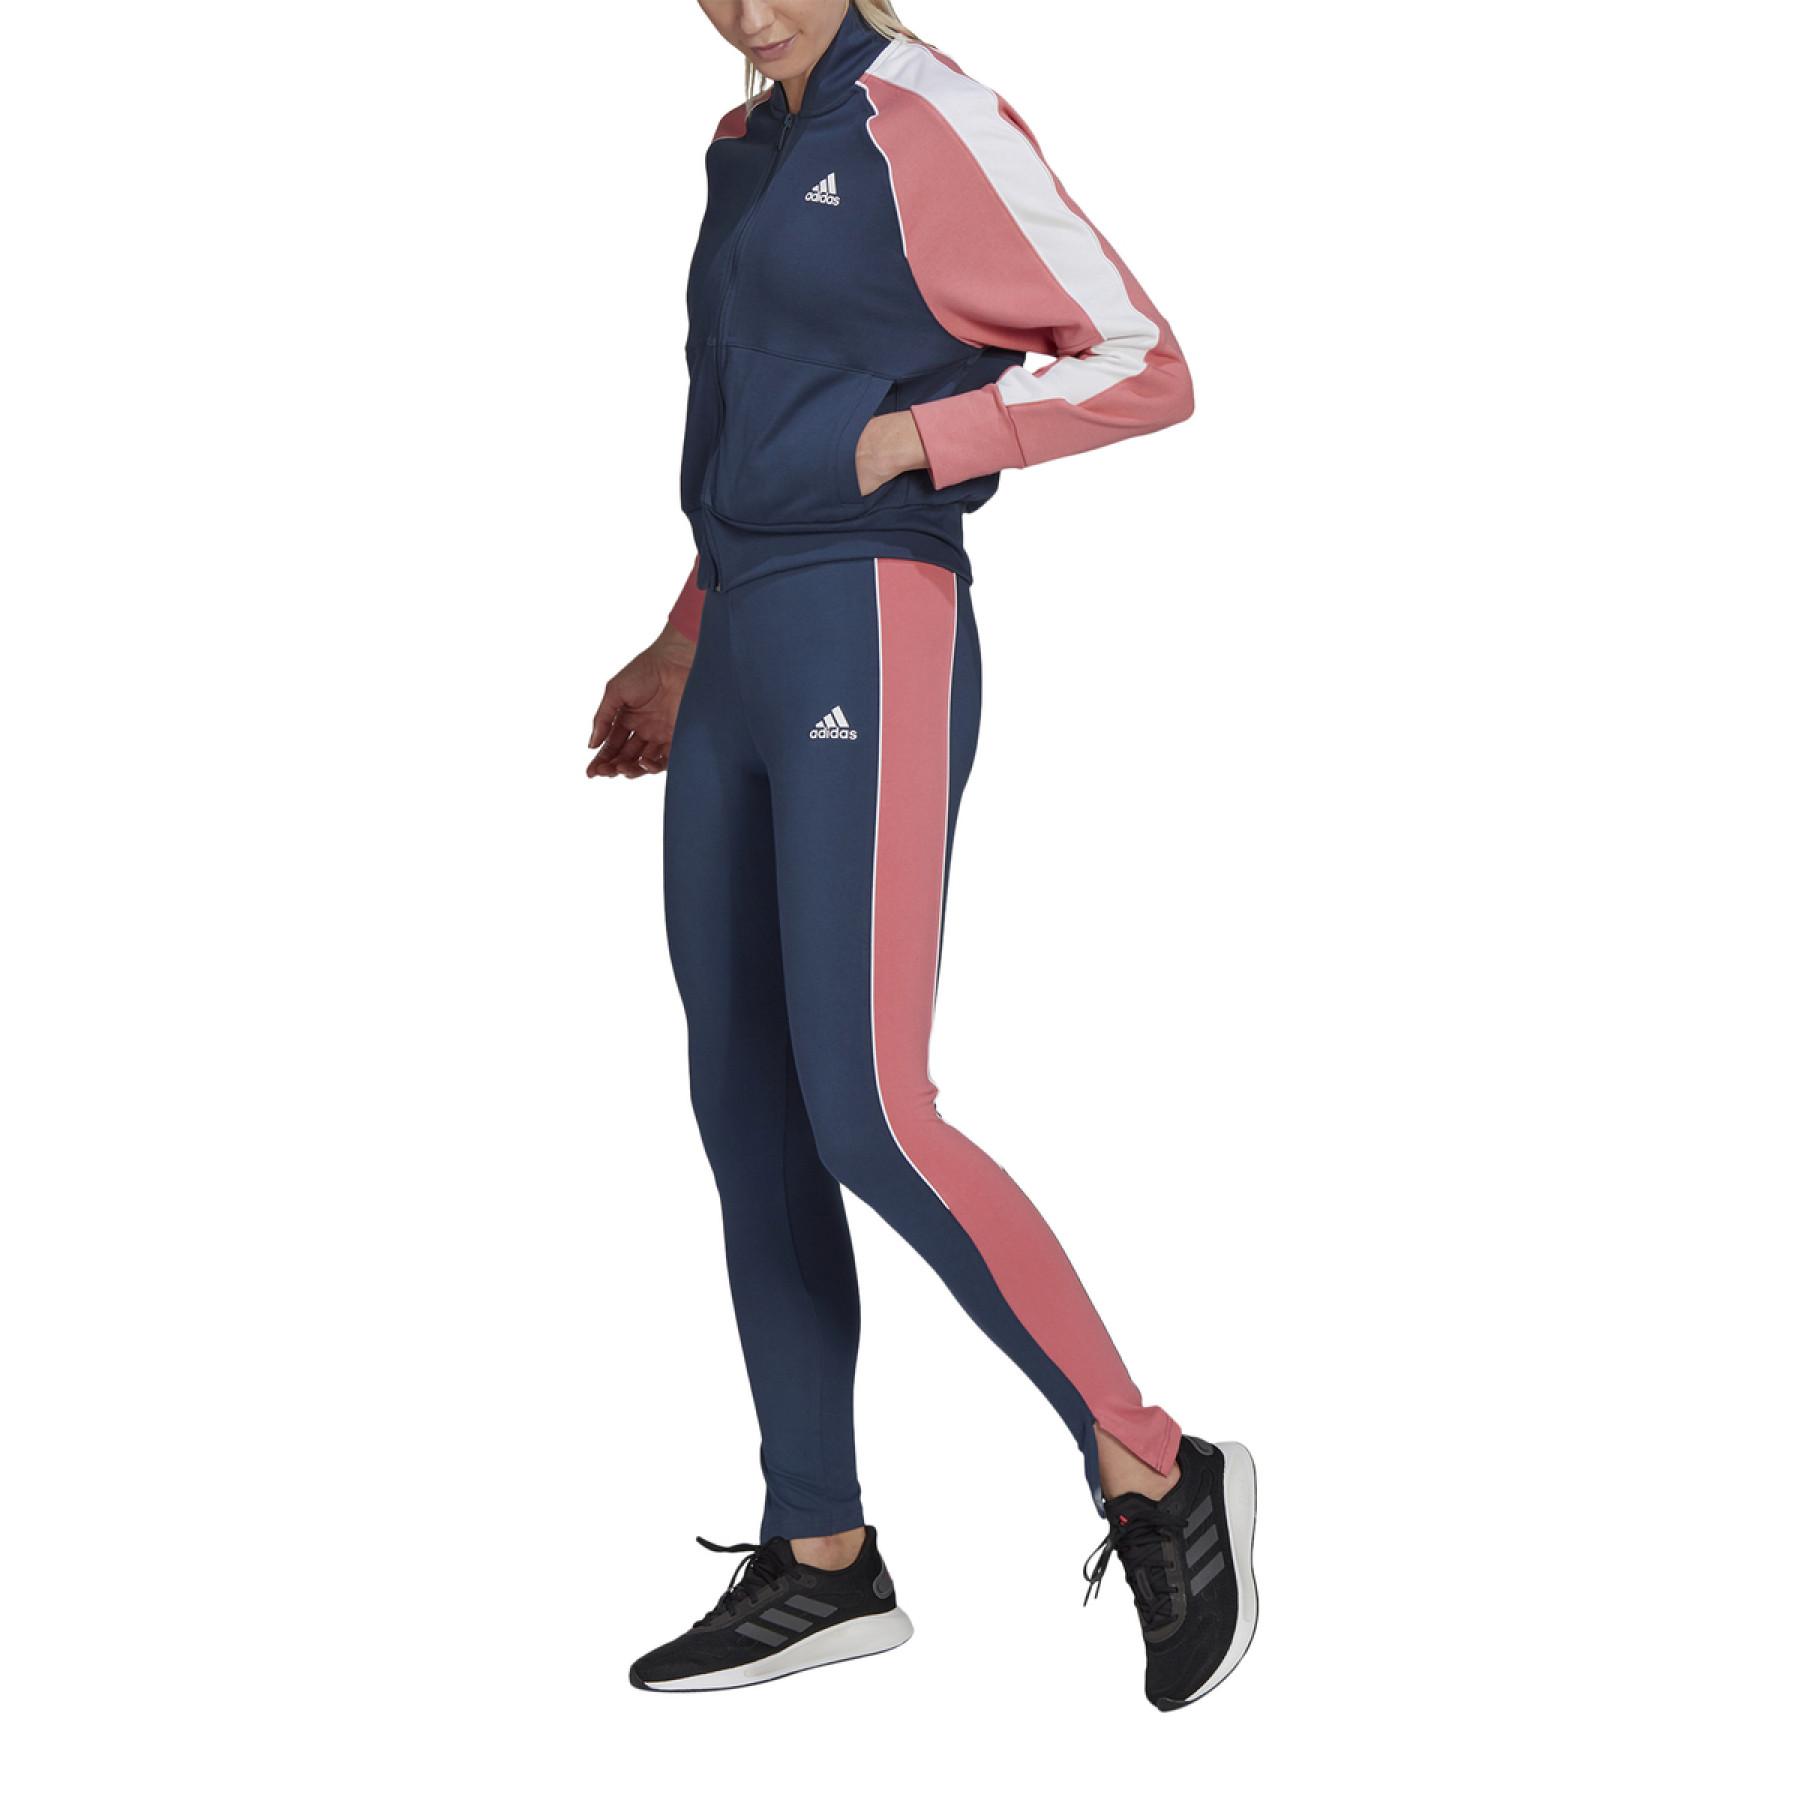 Damen-Trainingsanzug adidas Bomber and Tight